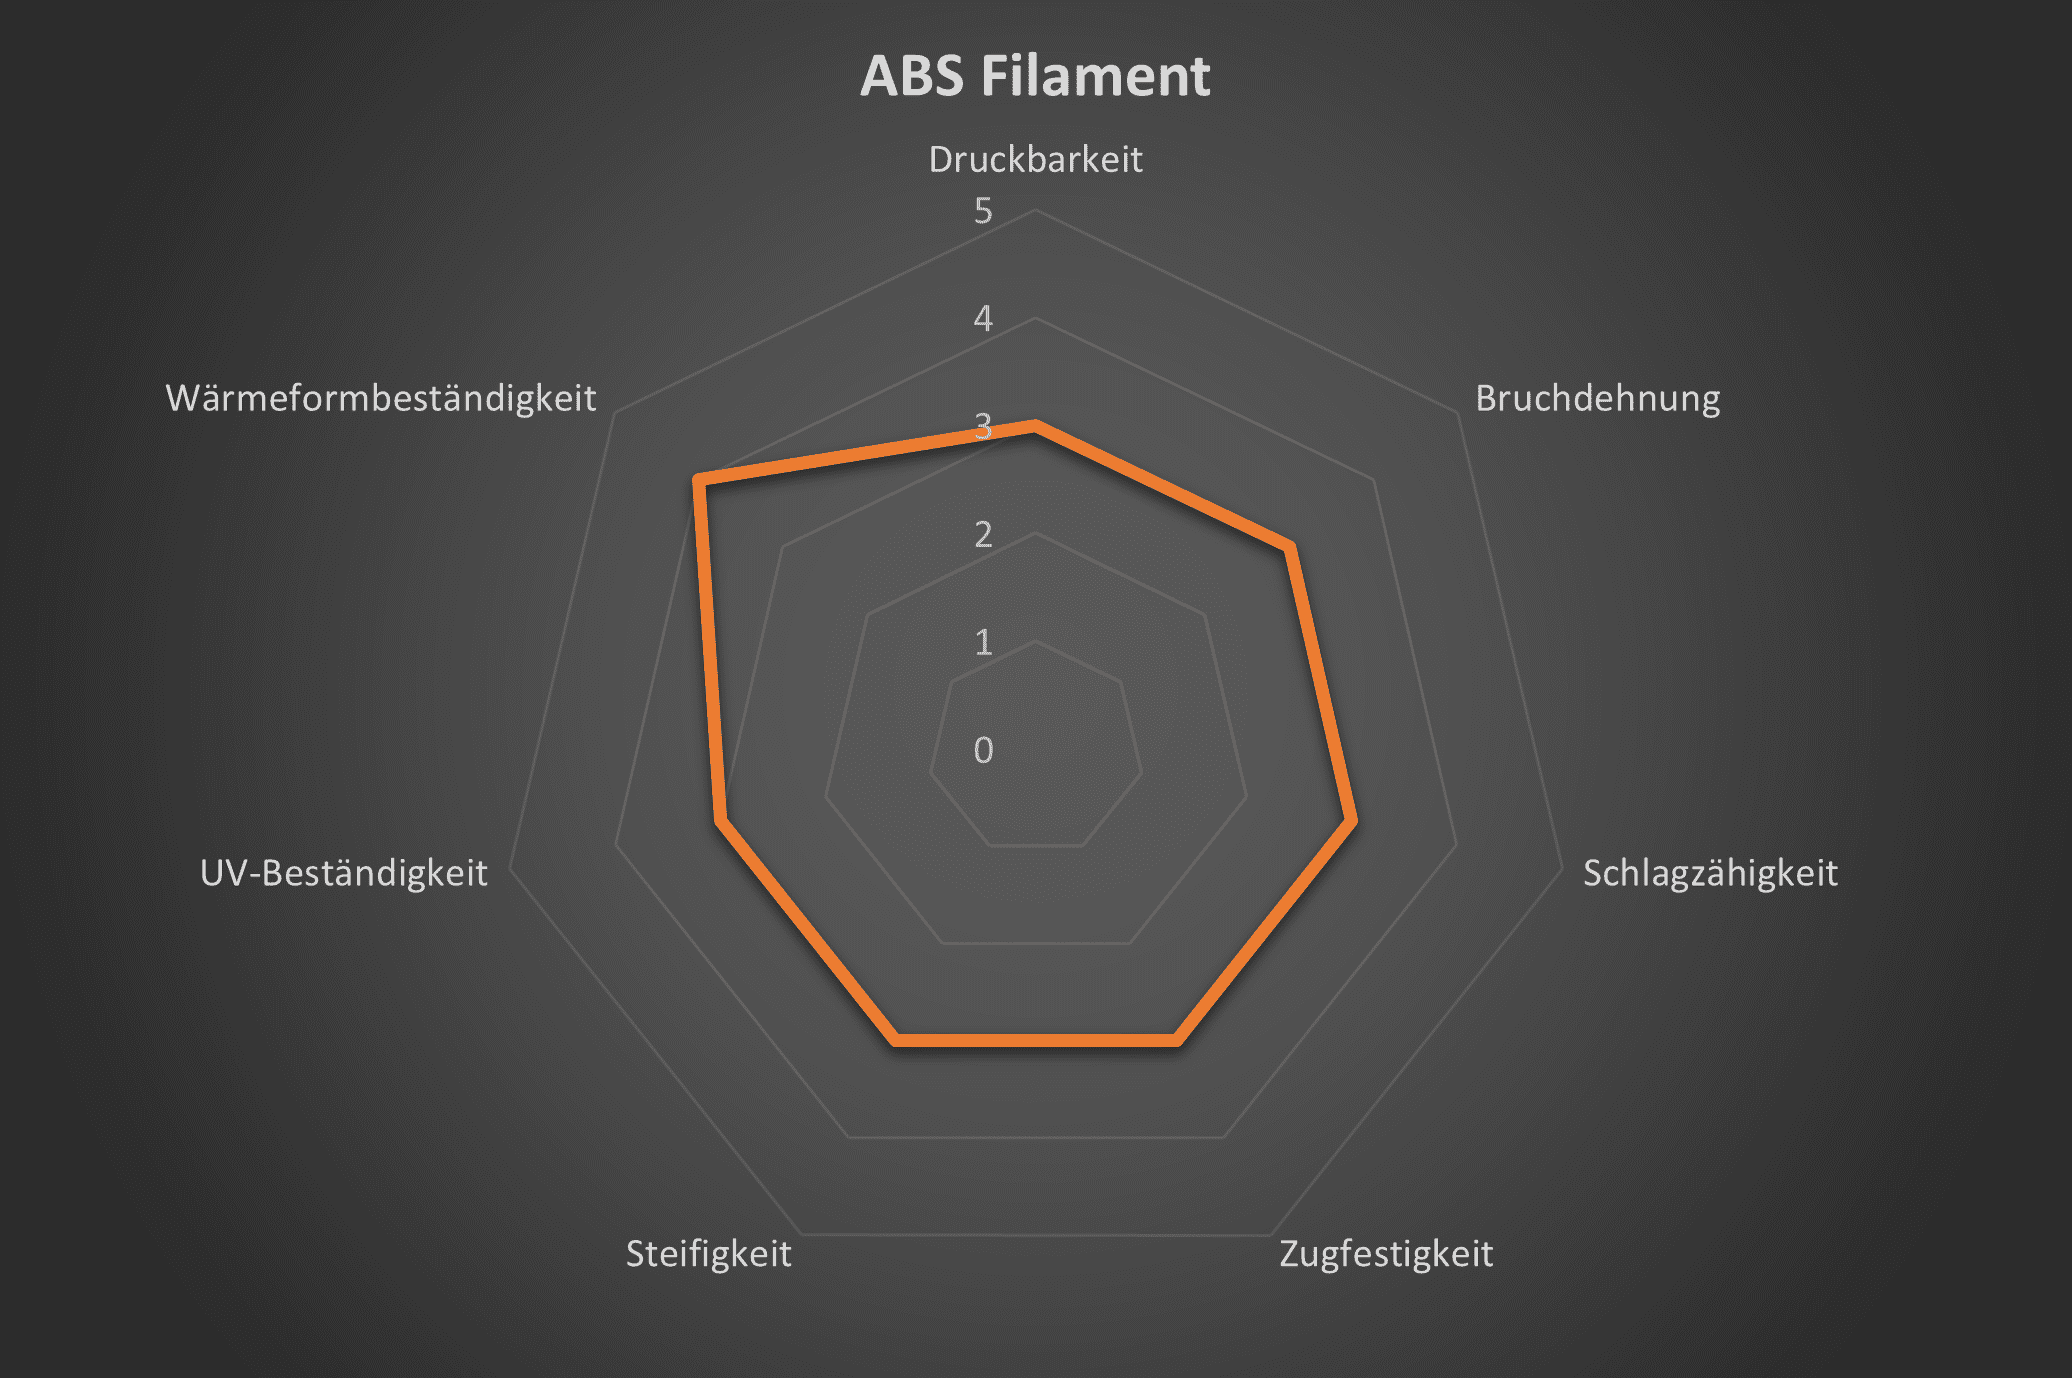 Spinnendiagramm mit den technischen eigenschaften von ABS Filament